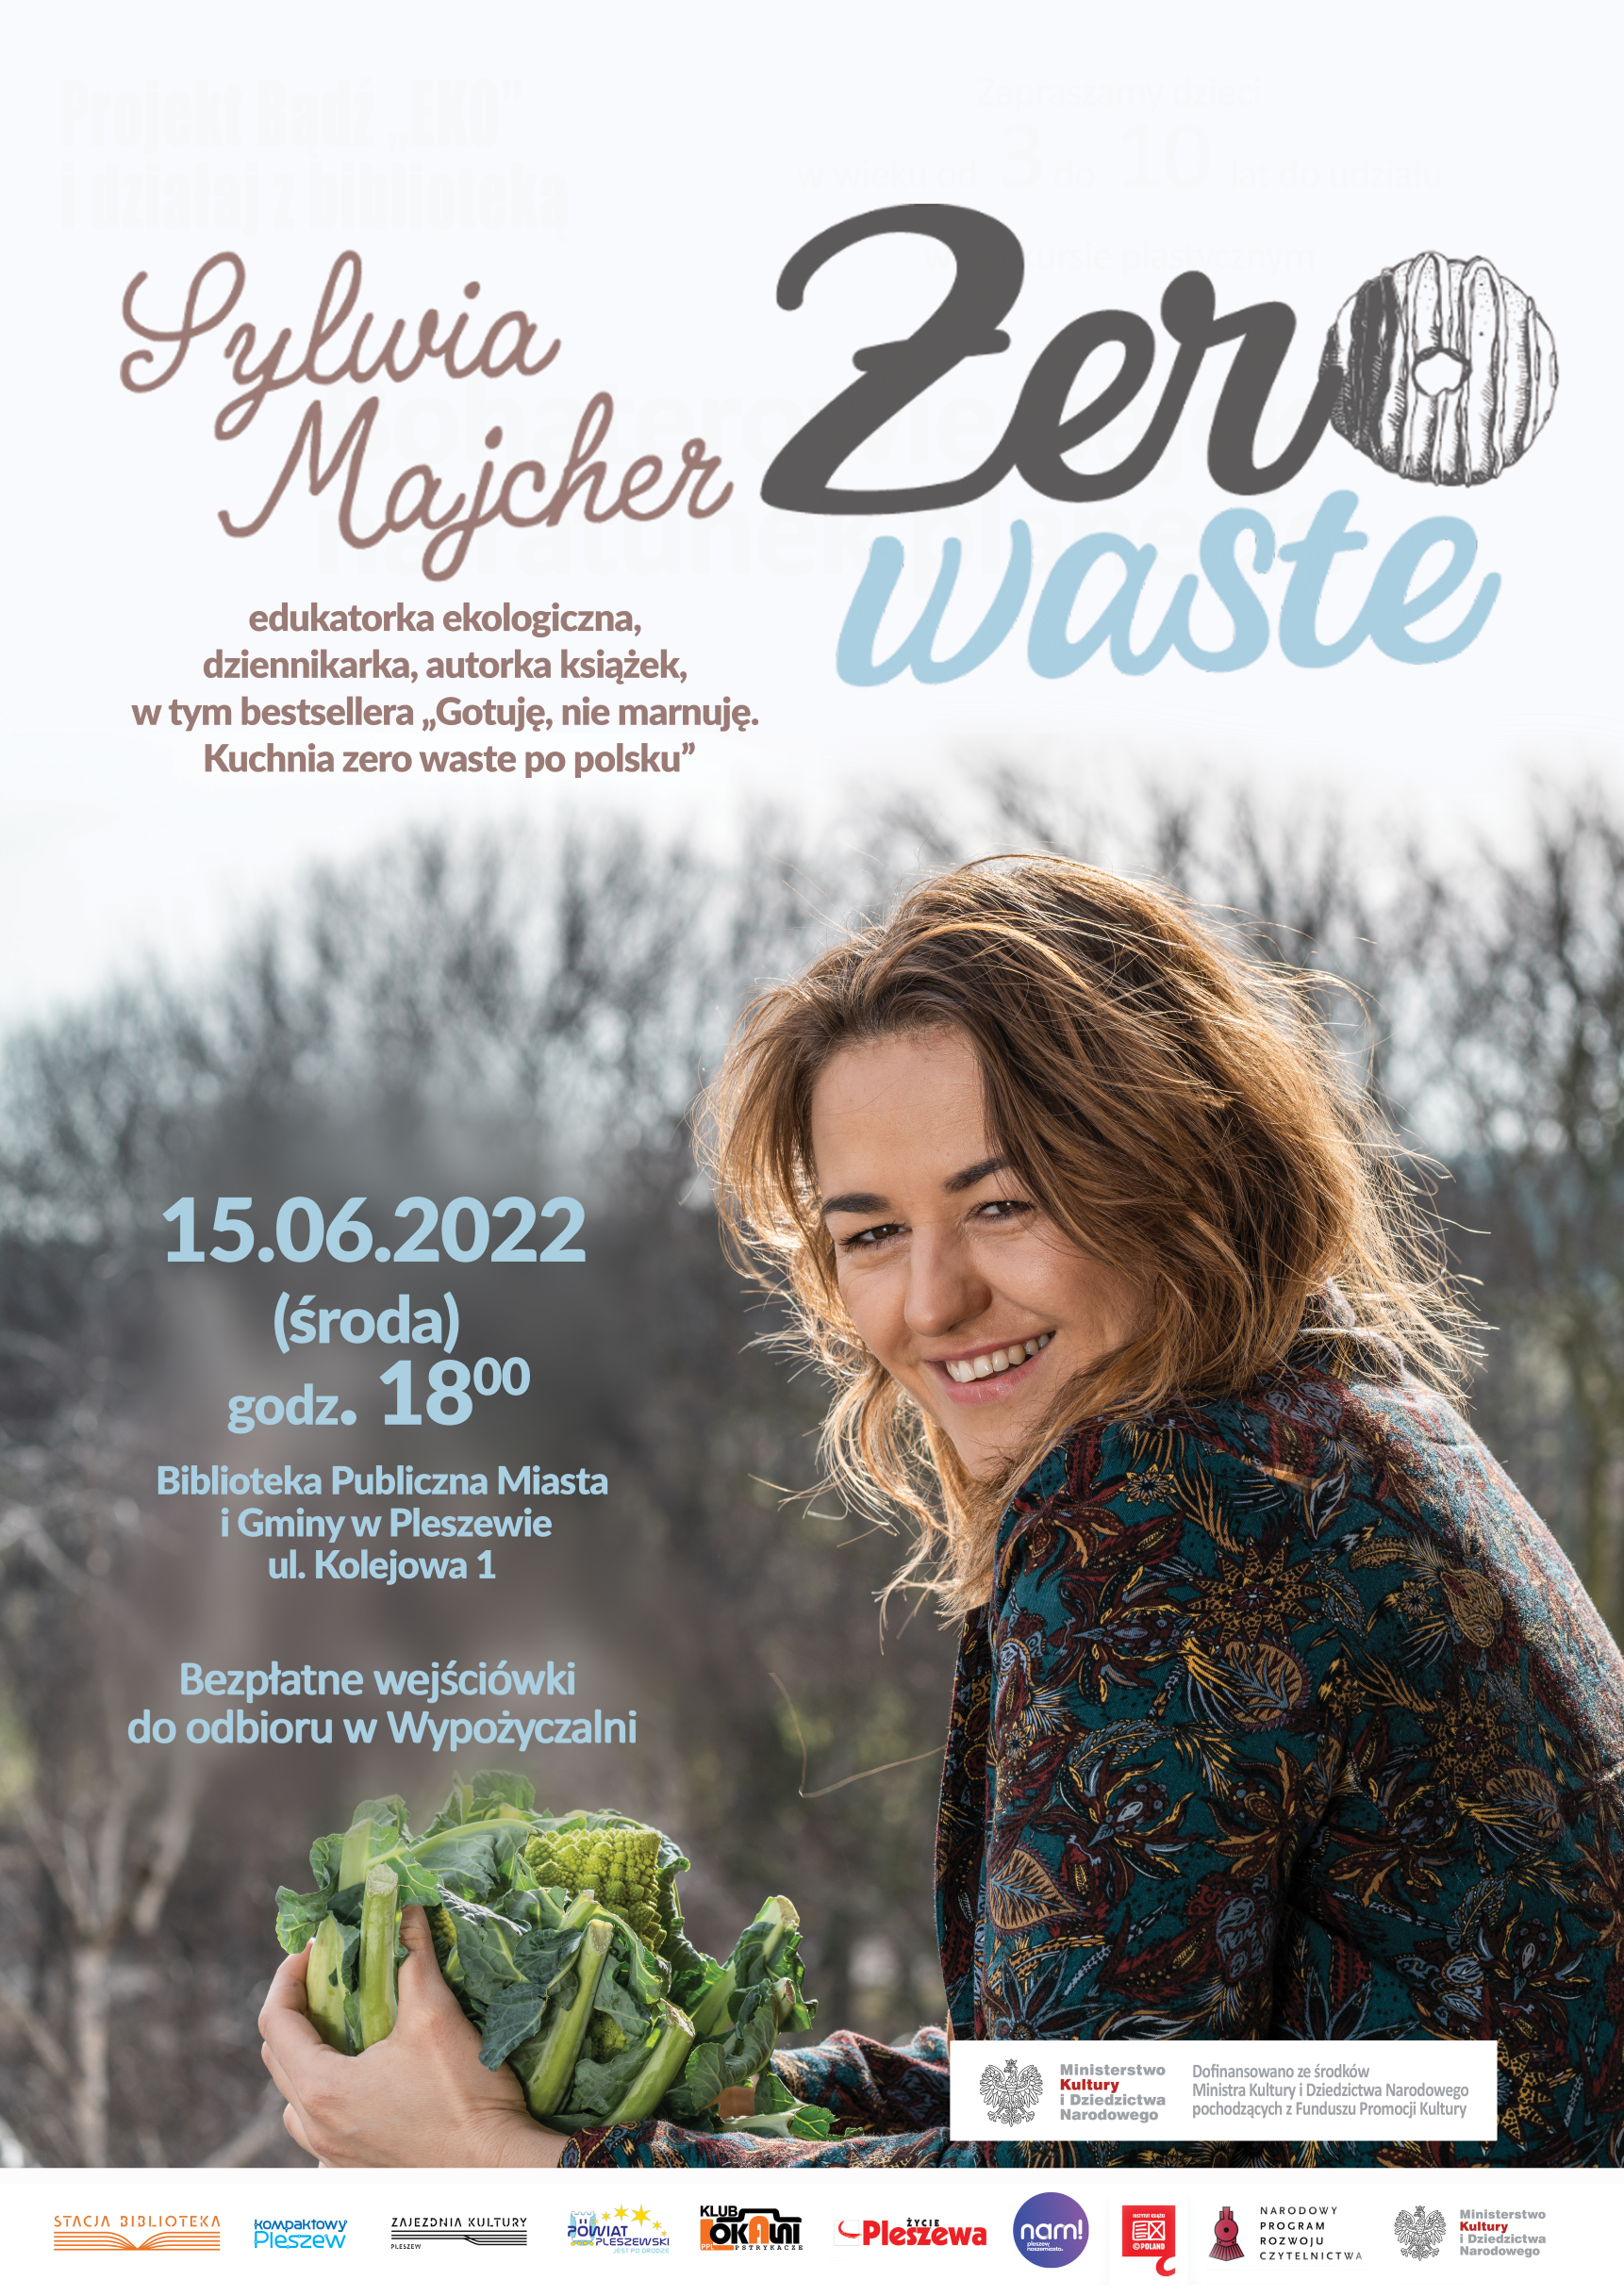 Na plakacie widać szczegóły spotkania z edukatorką ekologiczną- Sylwią Majcher